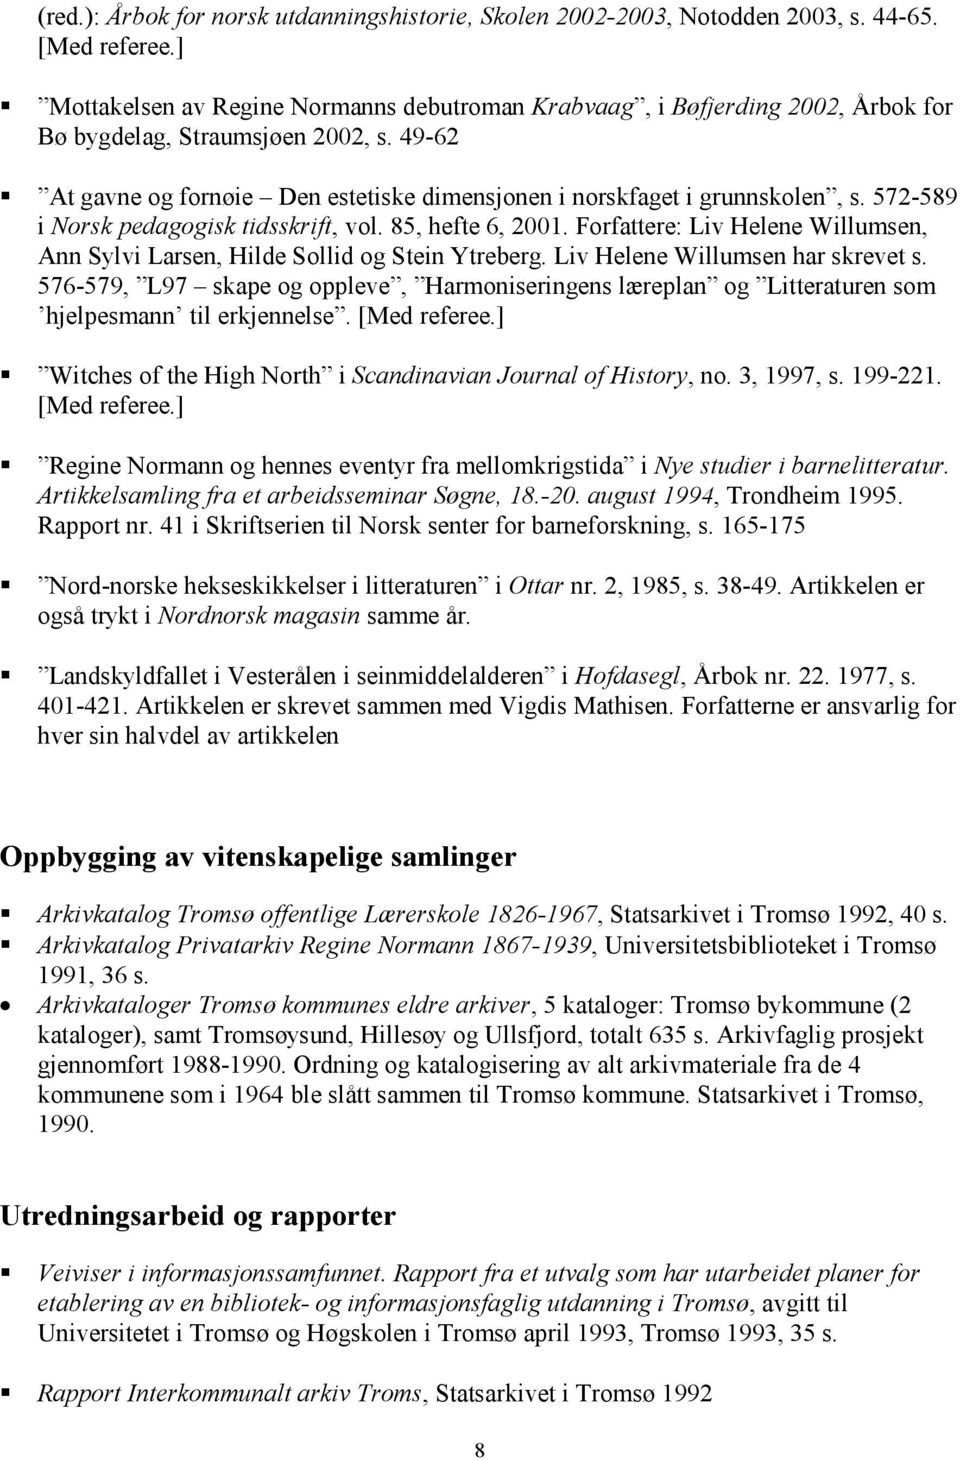 572-589 i Norsk pedagogisk tidsskrift, vol. 85, hefte 6, 2001. Forfattere: Liv Helene Willumsen, Ann Sylvi Larsen, Hilde Sollid og Stein Ytreberg. Liv Helene Willumsen har skrevet s.